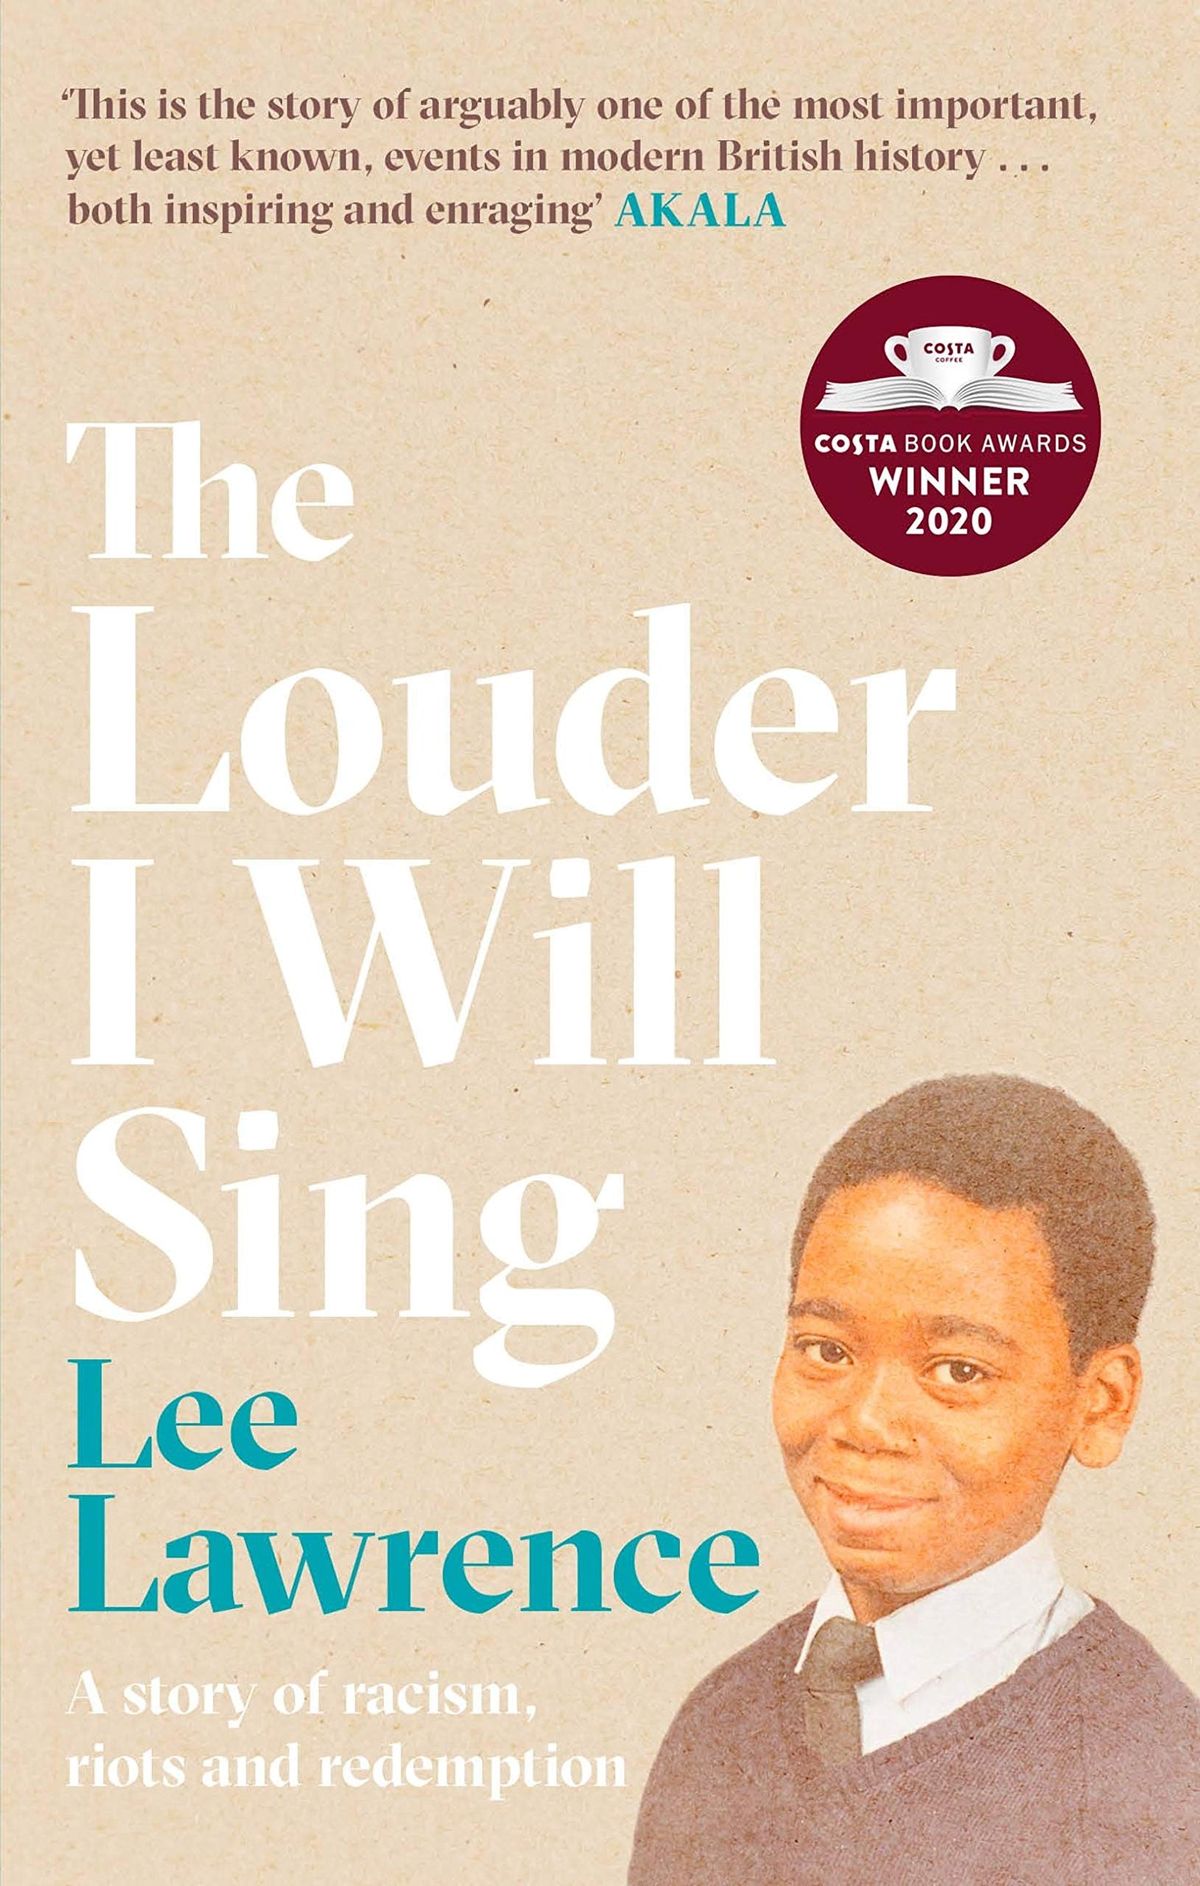 Garsiau dainuosiu Lee Lawrence'o istorija apie kartų stiprybę – IŠTRAUKA